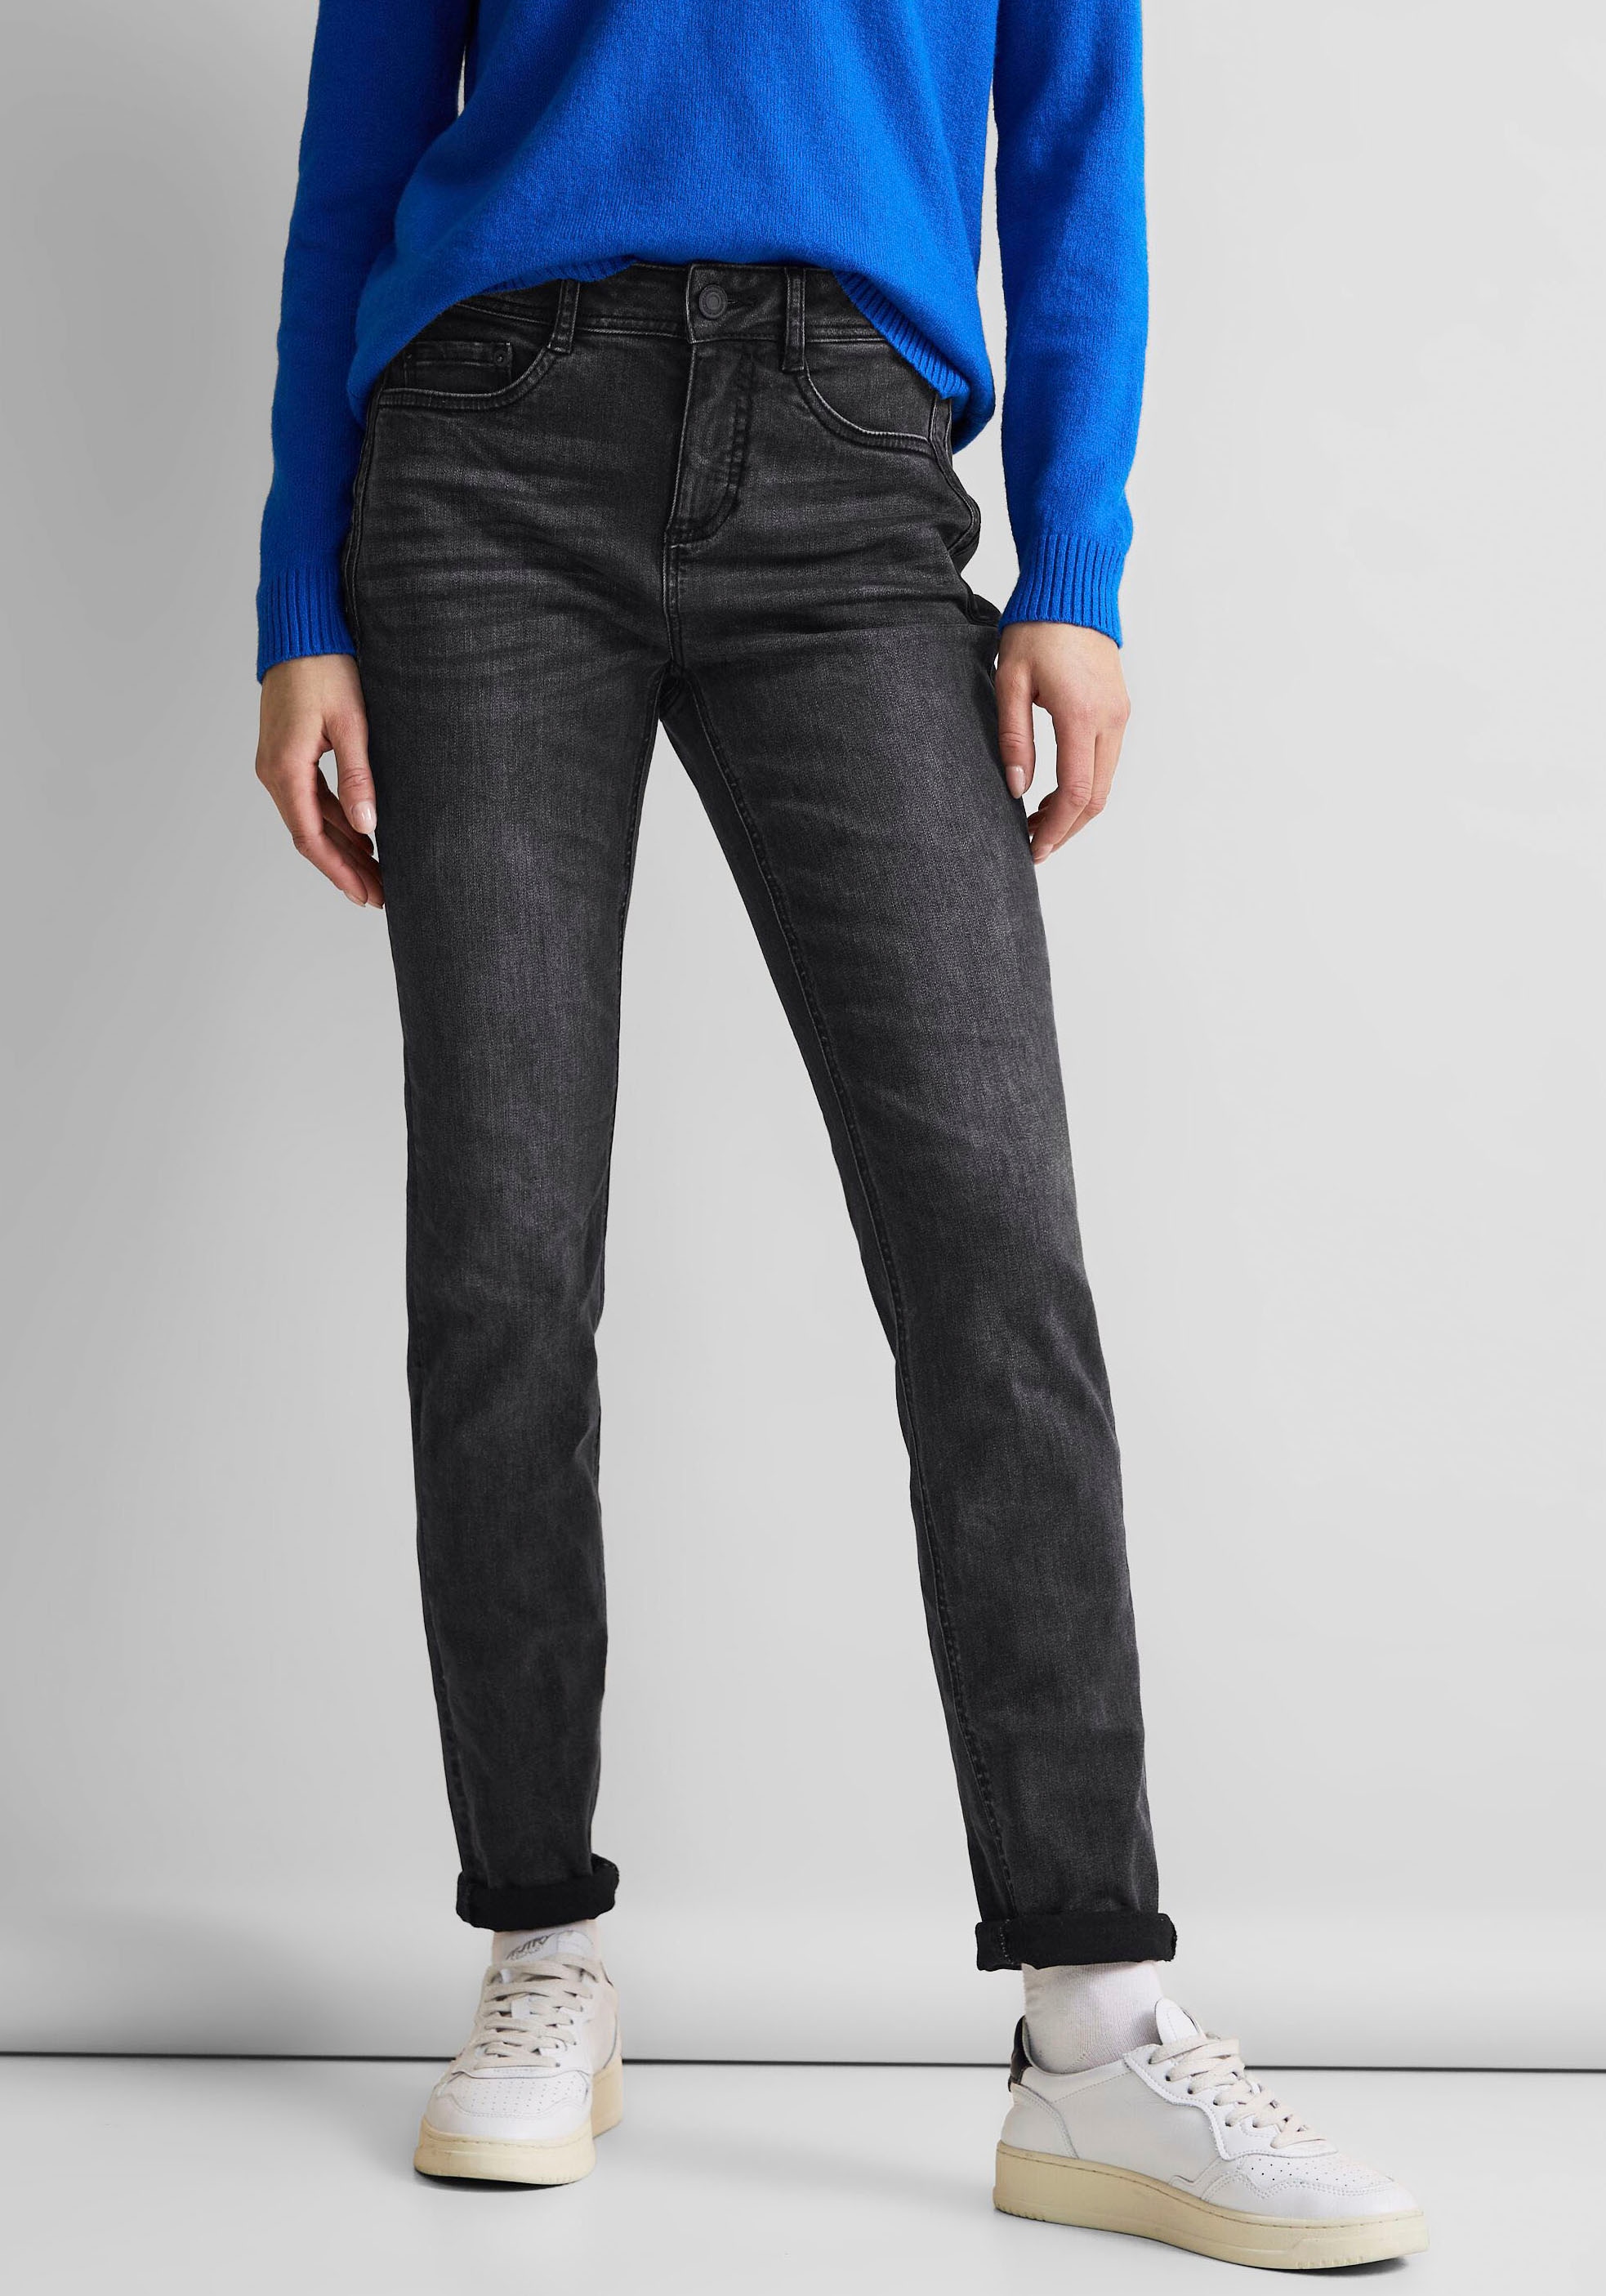 ONE bei online STREET Fünf-Pocket-Stil Slim-fit-Jeans, OTTO im